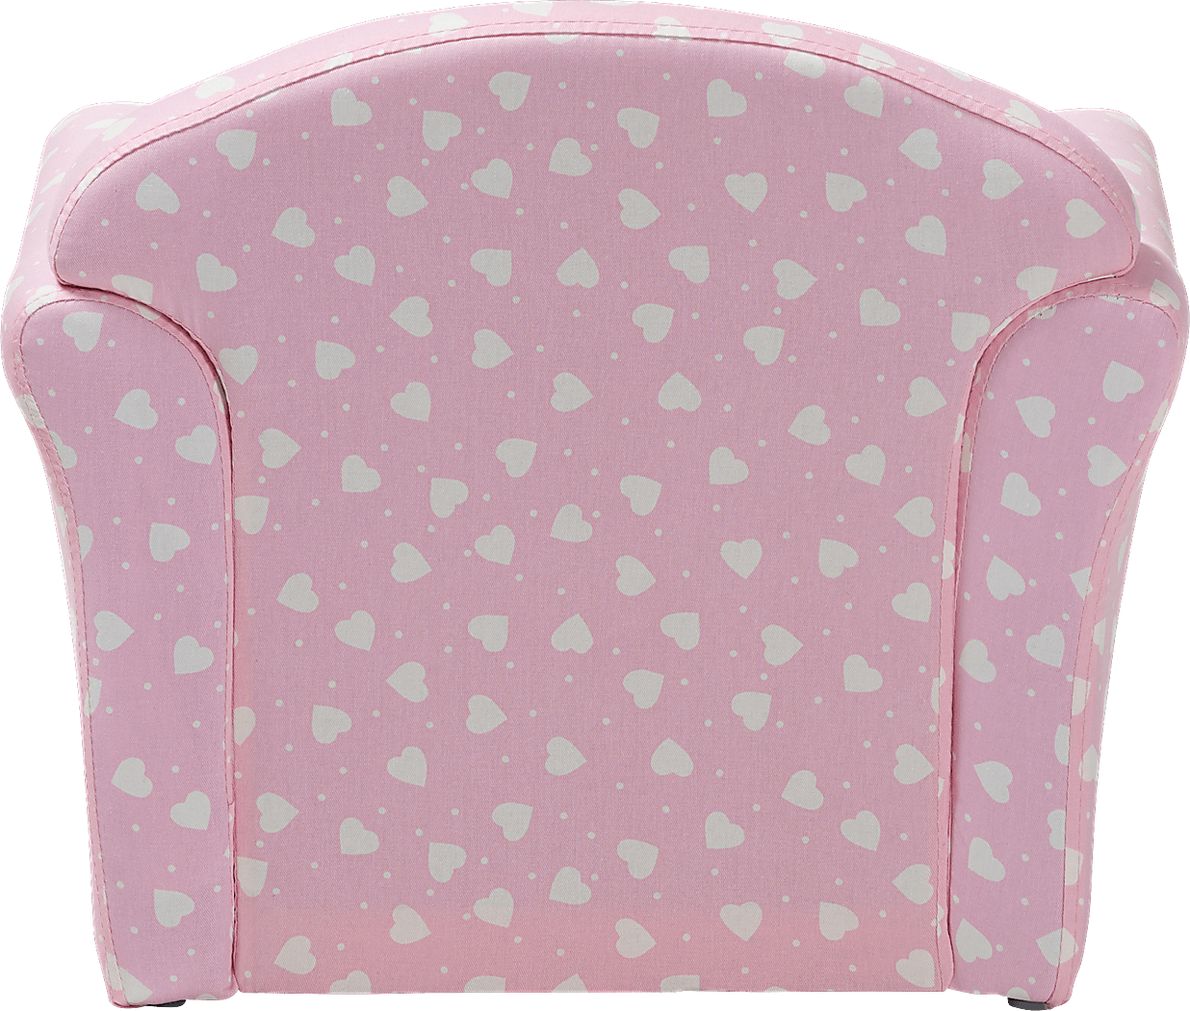 Blaffer Pink Accent Chair